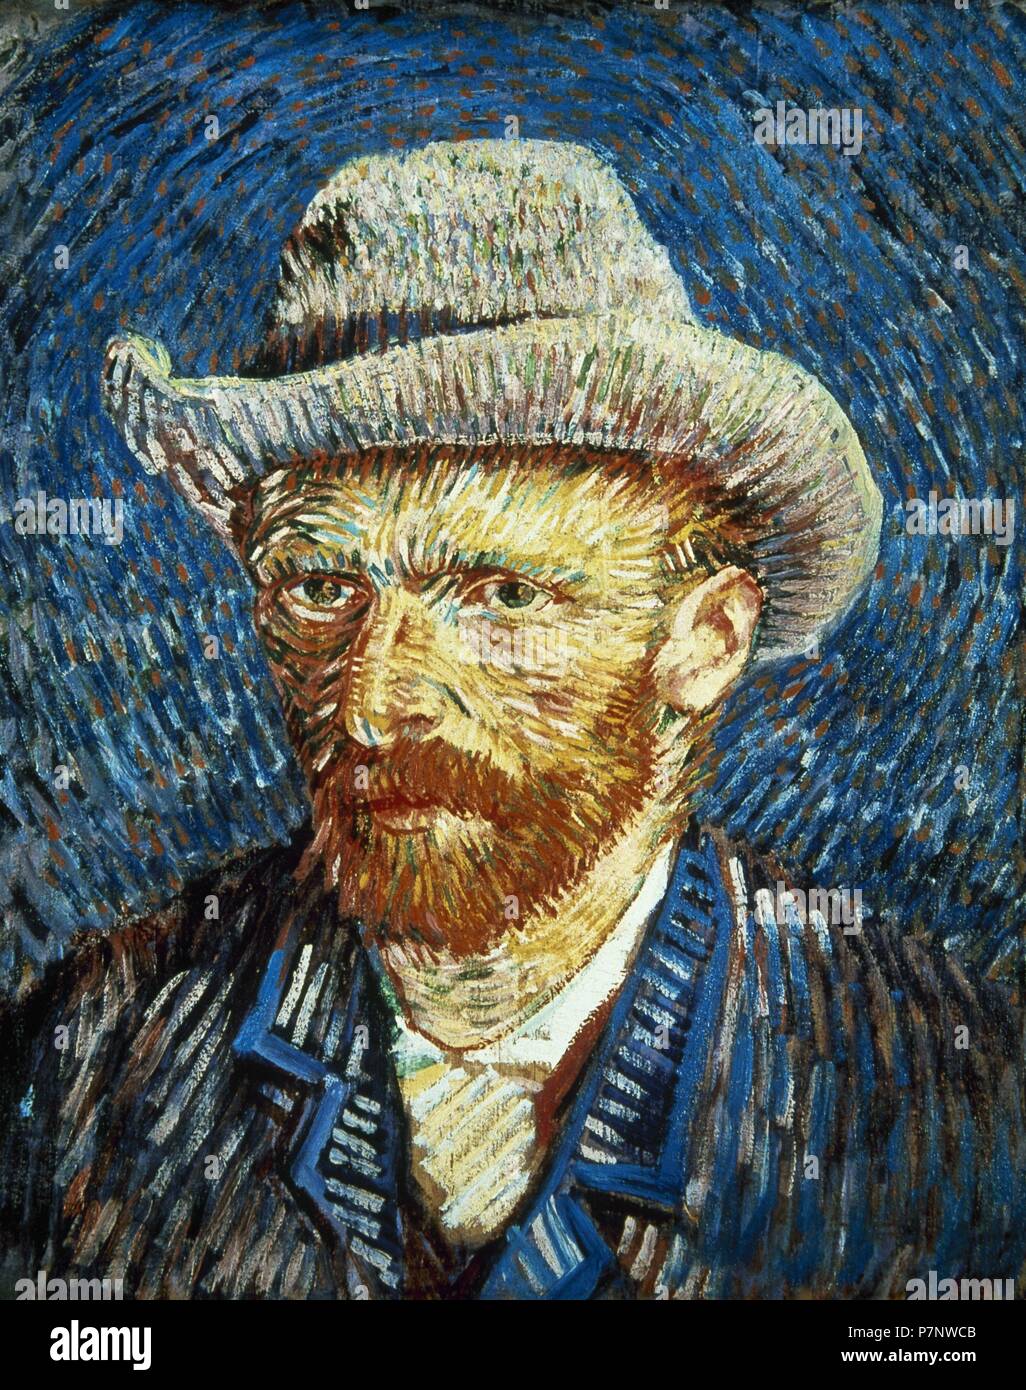 Vincent Van Gogh (1853-1890). Niederländische Post-Impressionisten Maler. Selbstporträt mit grauen Filzhut, 1887. Vincent Van Gogh Museum. Amsterdam. Holland. Stockfoto